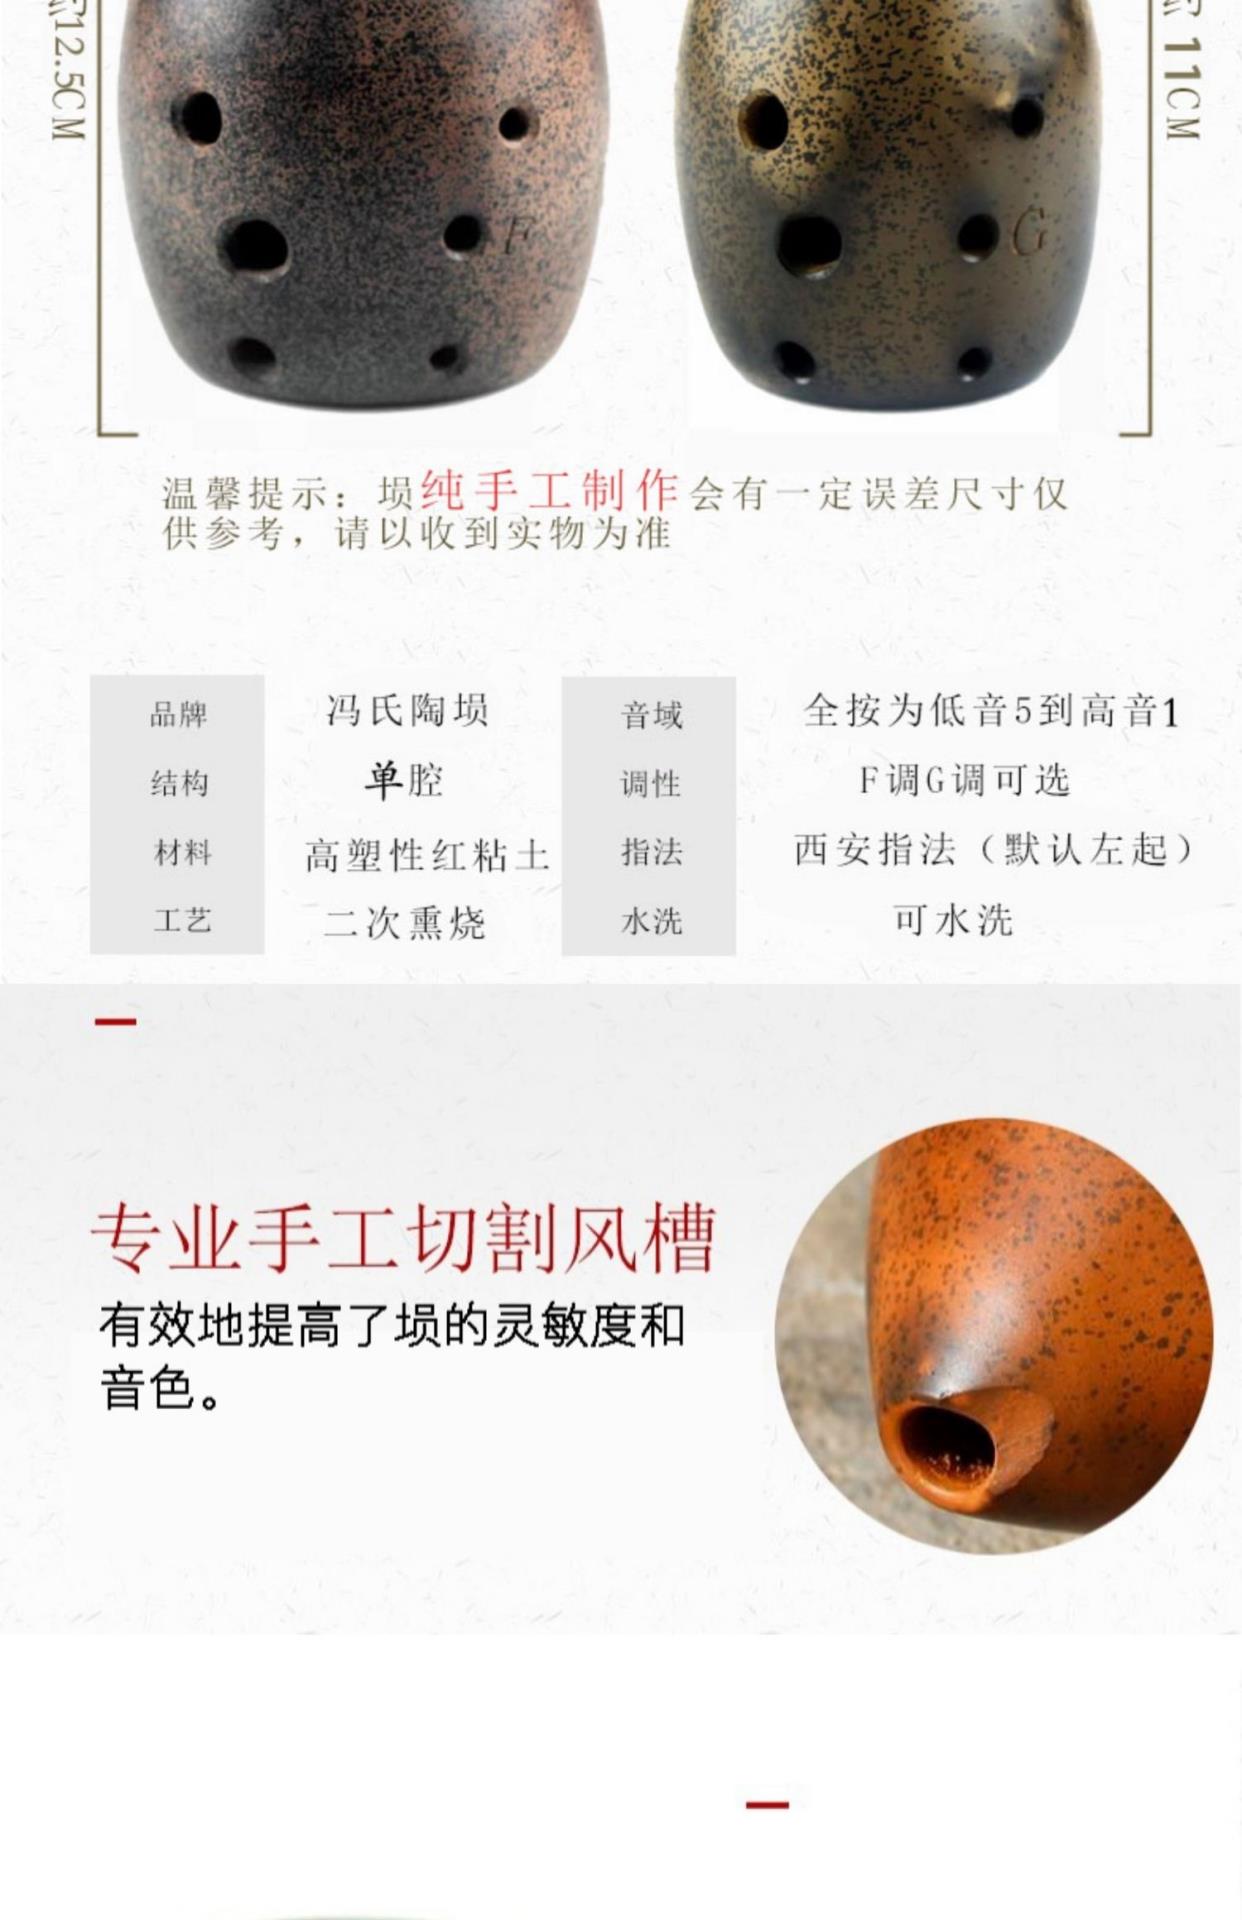 Chính hãng của Fengs Taoxun Tám lỗ Khoang đơn cho người mới bắt đầu Hút khói tinh xảo Hình quả lê Xun Nhạc cụ quốc gia trình diễn chuyên nghiệp - Nhạc cụ dân tộc